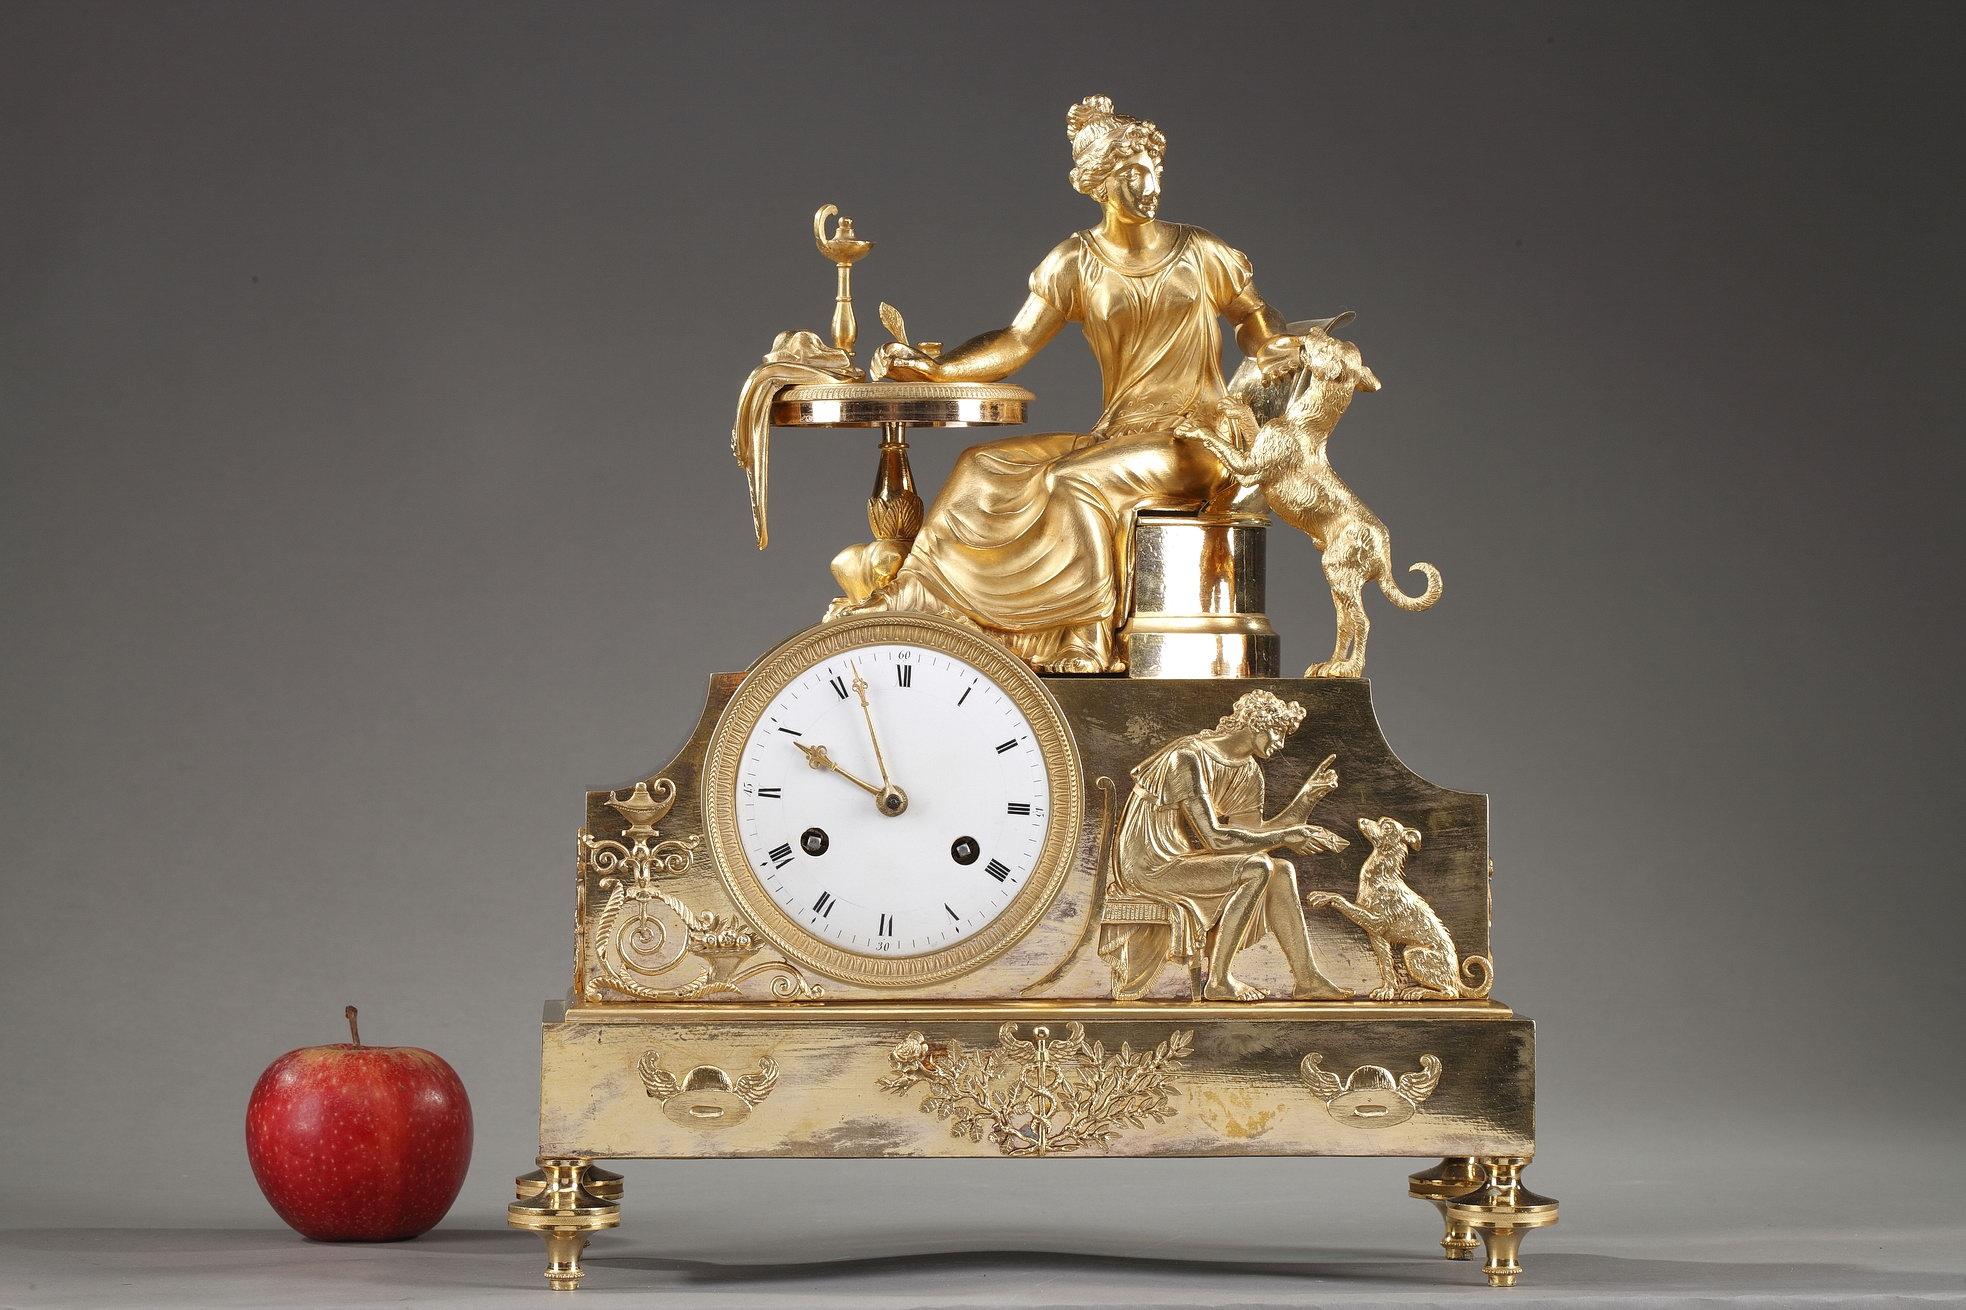 Pendule Empire du début du XIXe siècle, en bronze doré ou en bronze ciselé, présentant une scène allégorique avec une femme assise à sa table de travail jouant avec son chien, symbole de loyauté. Le groupe est placé au-dessus d'un boîtier surélevé